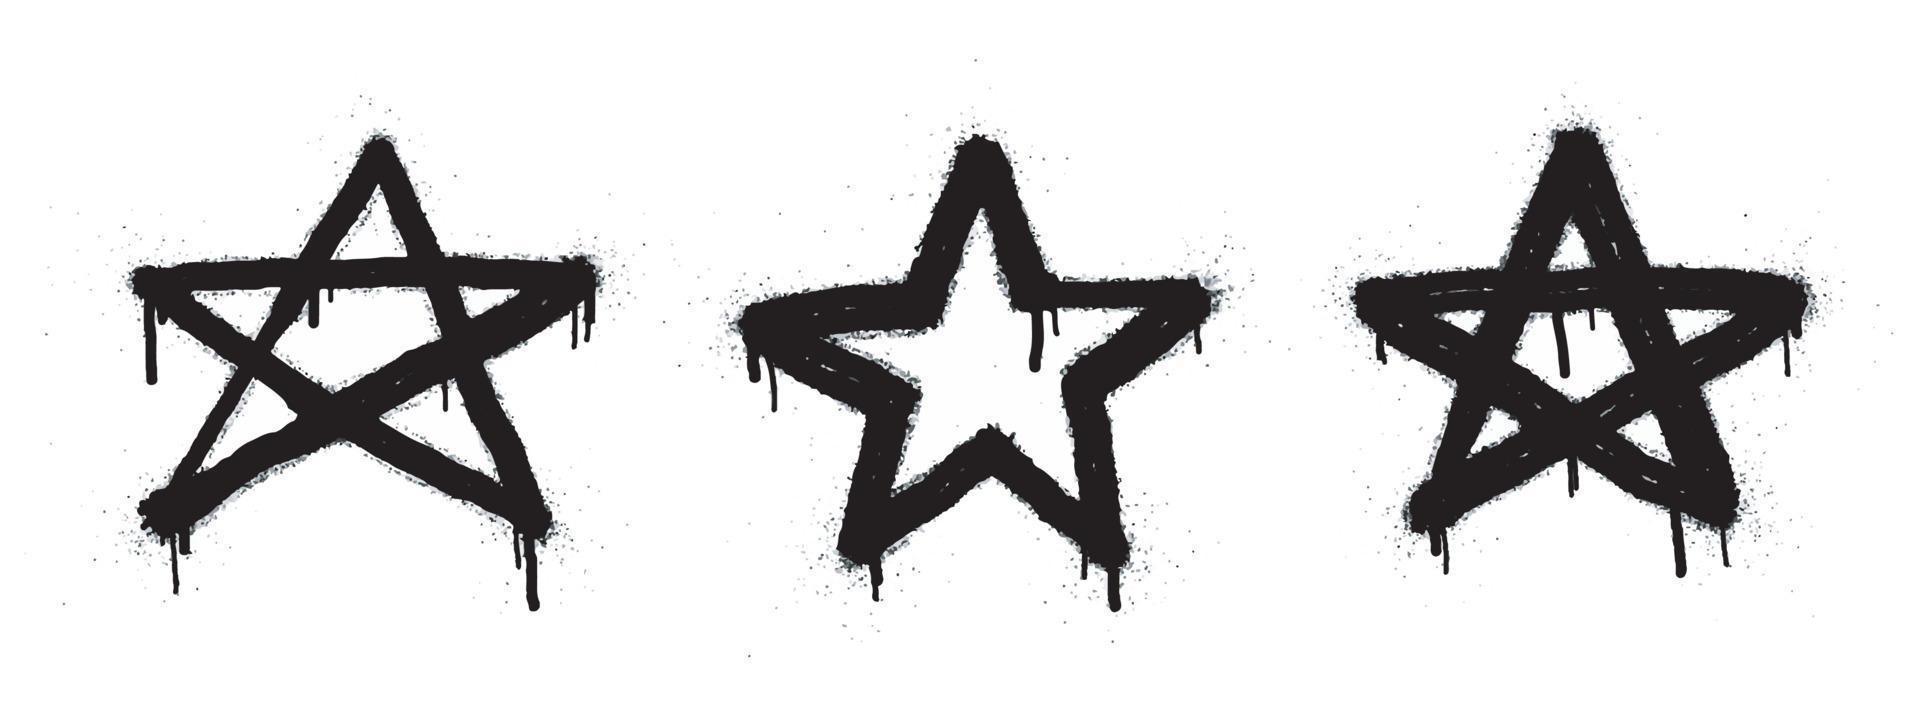 feedback positivo de classificação de cinco estrelas. graffiti pintado com spray cinco estrelas em preto sobre branco. símbolo de classificação por estrelas. isolado no fundo branco. ilustração vetorial vetor